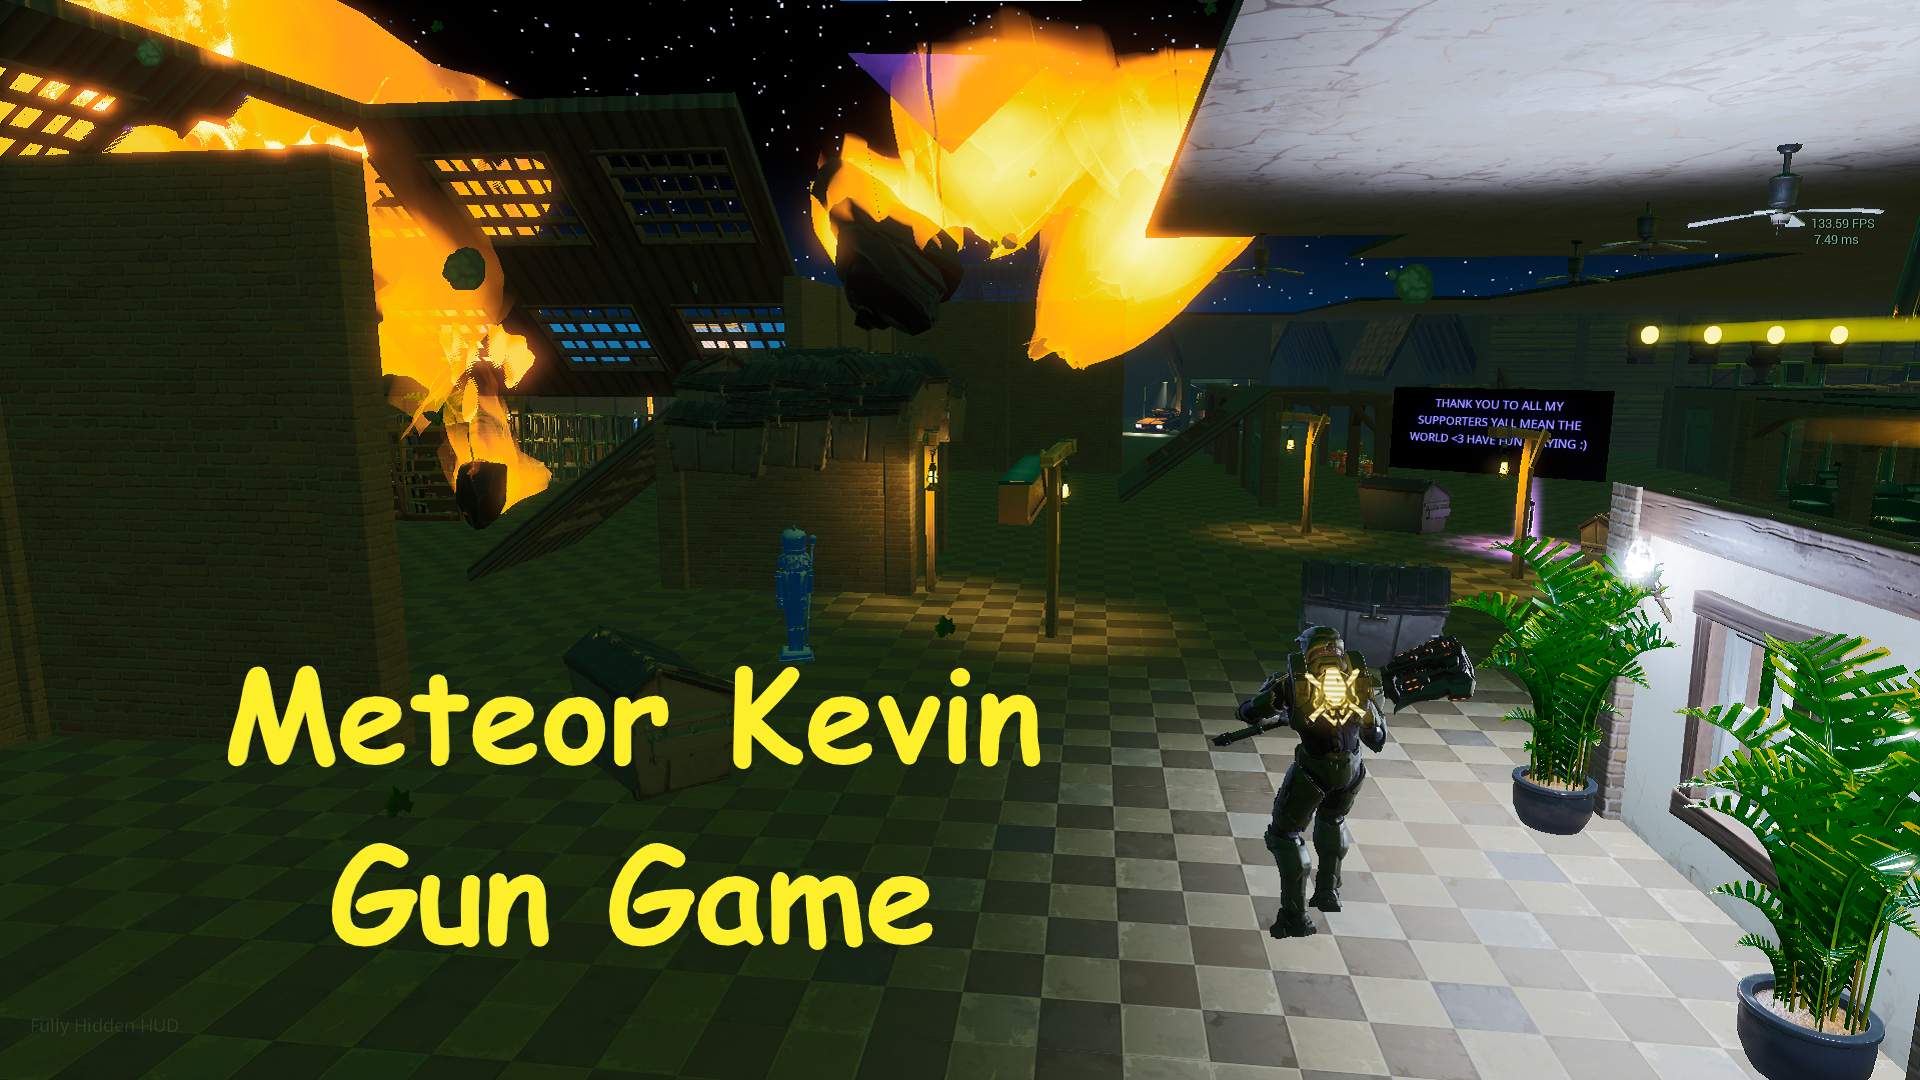 METEOR KEVIN GUN GAME